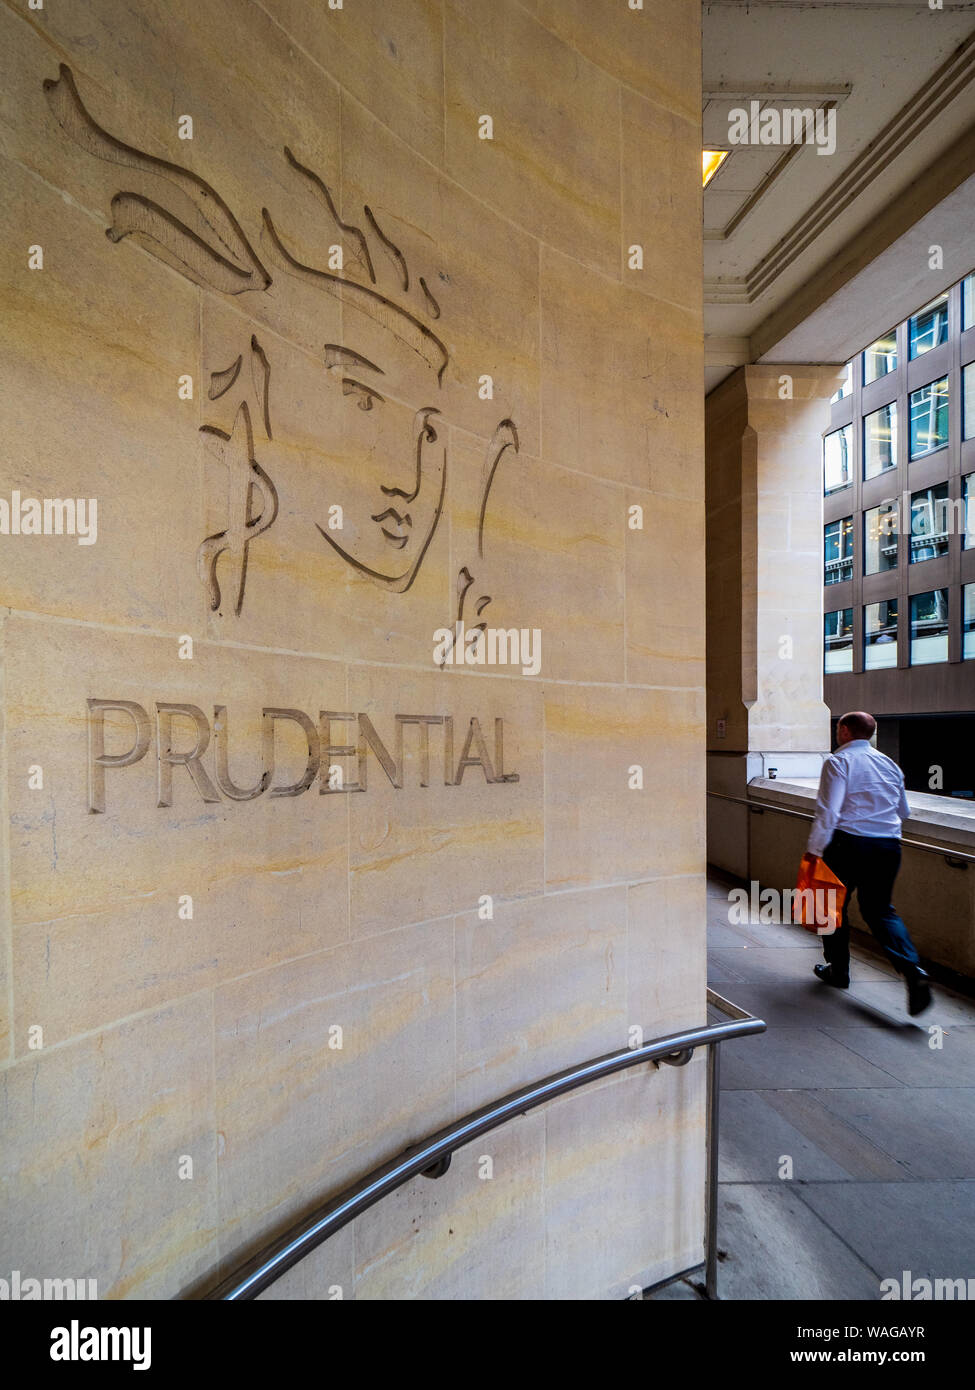 Logo Prudential London - Logo della Prudential Life Insurance and Financial Services Company scolpito nel muro di un edificio nel centro di Londra nel Regno Unito Foto Stock